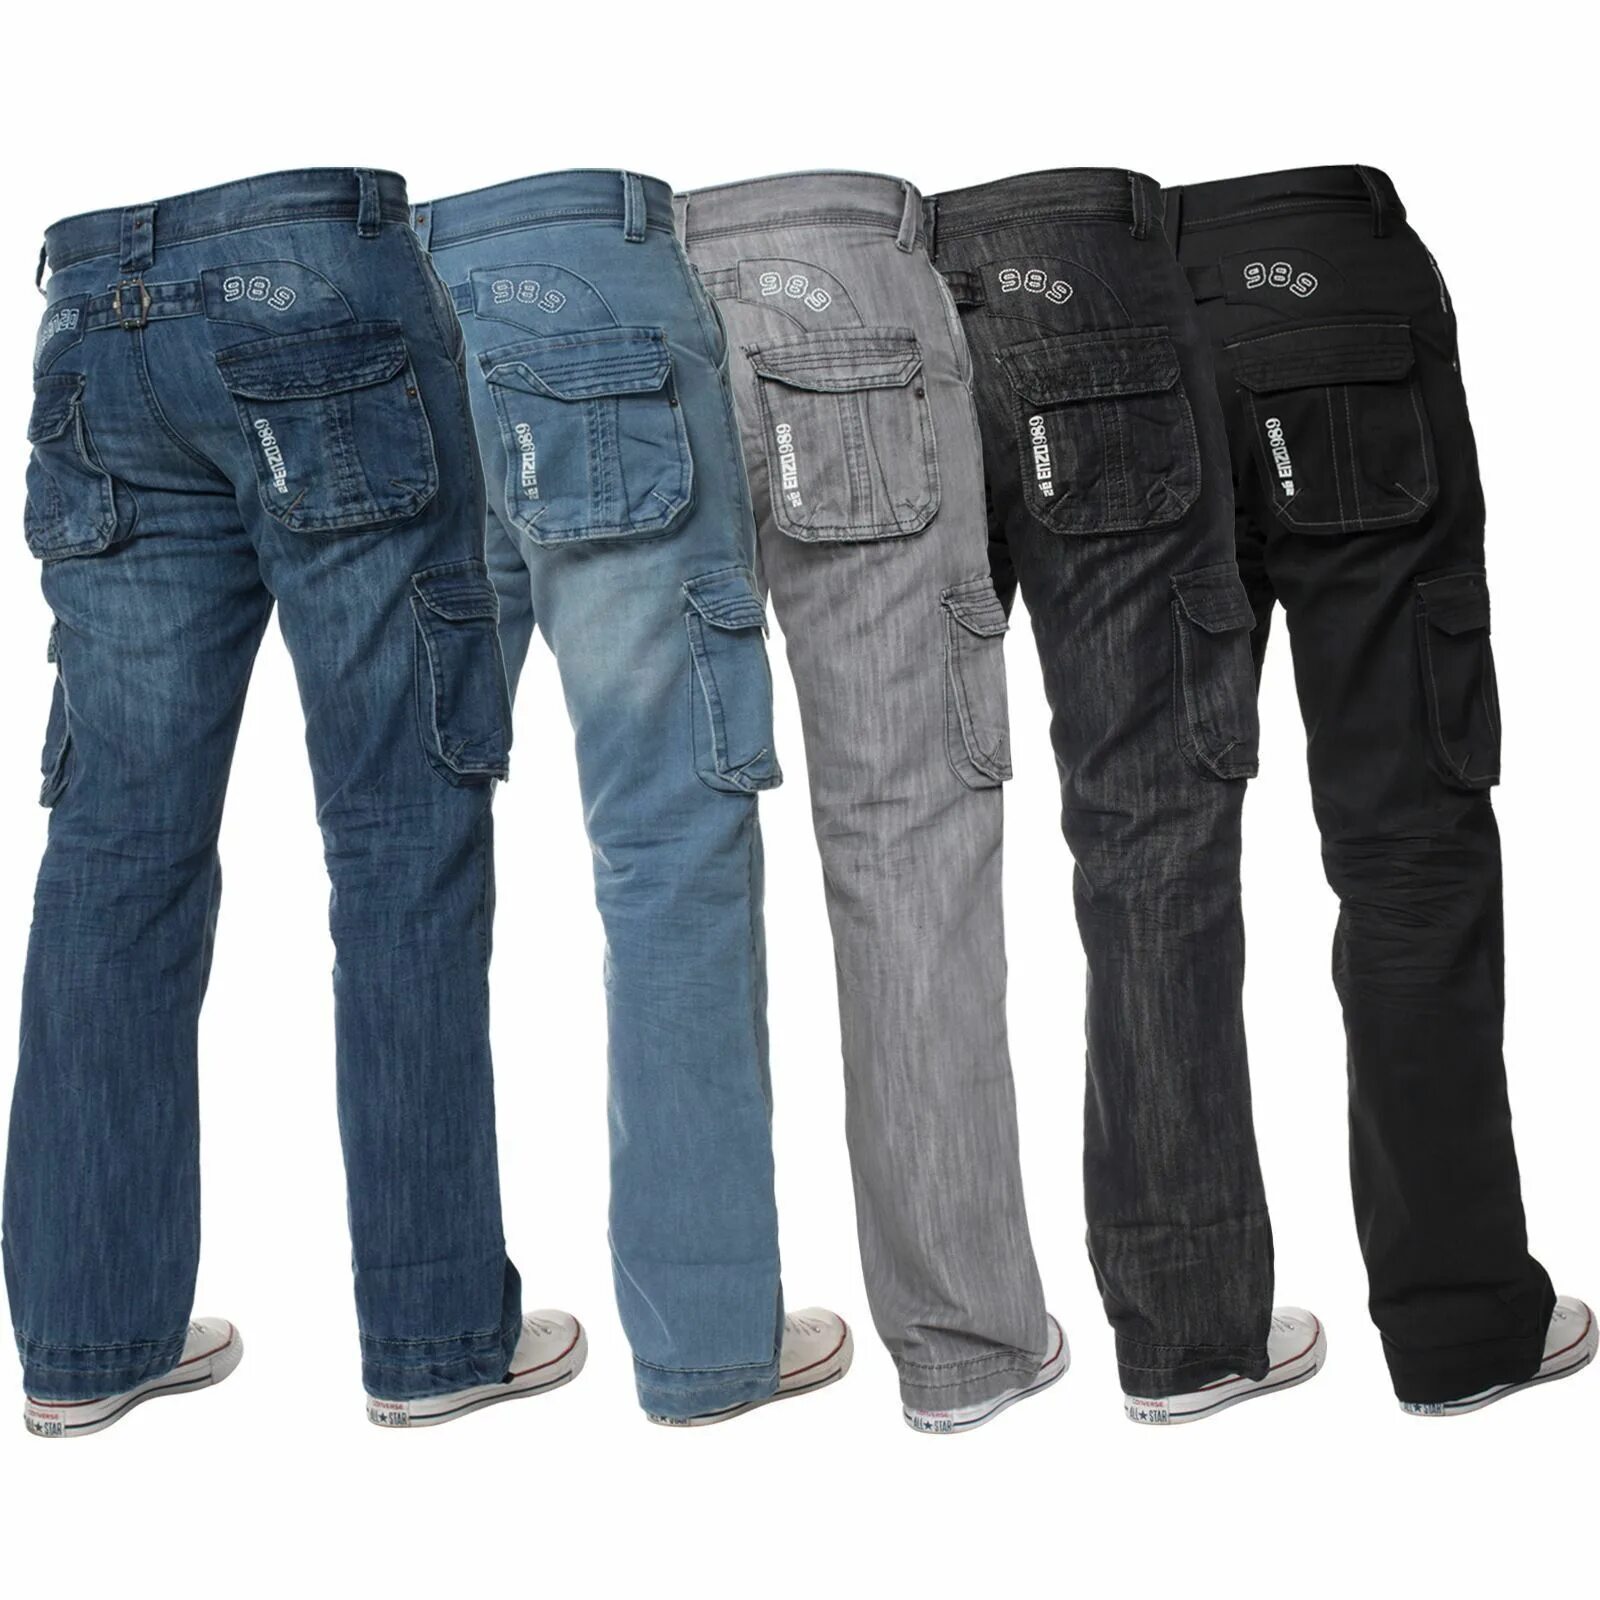 Купить мужские джинсы с карманами по бокам. Джинсы карго straight-Leg. Брюки карго деним Comfort Fit. Ze Enzo джинсы 989. Enzo 969 Jeans.